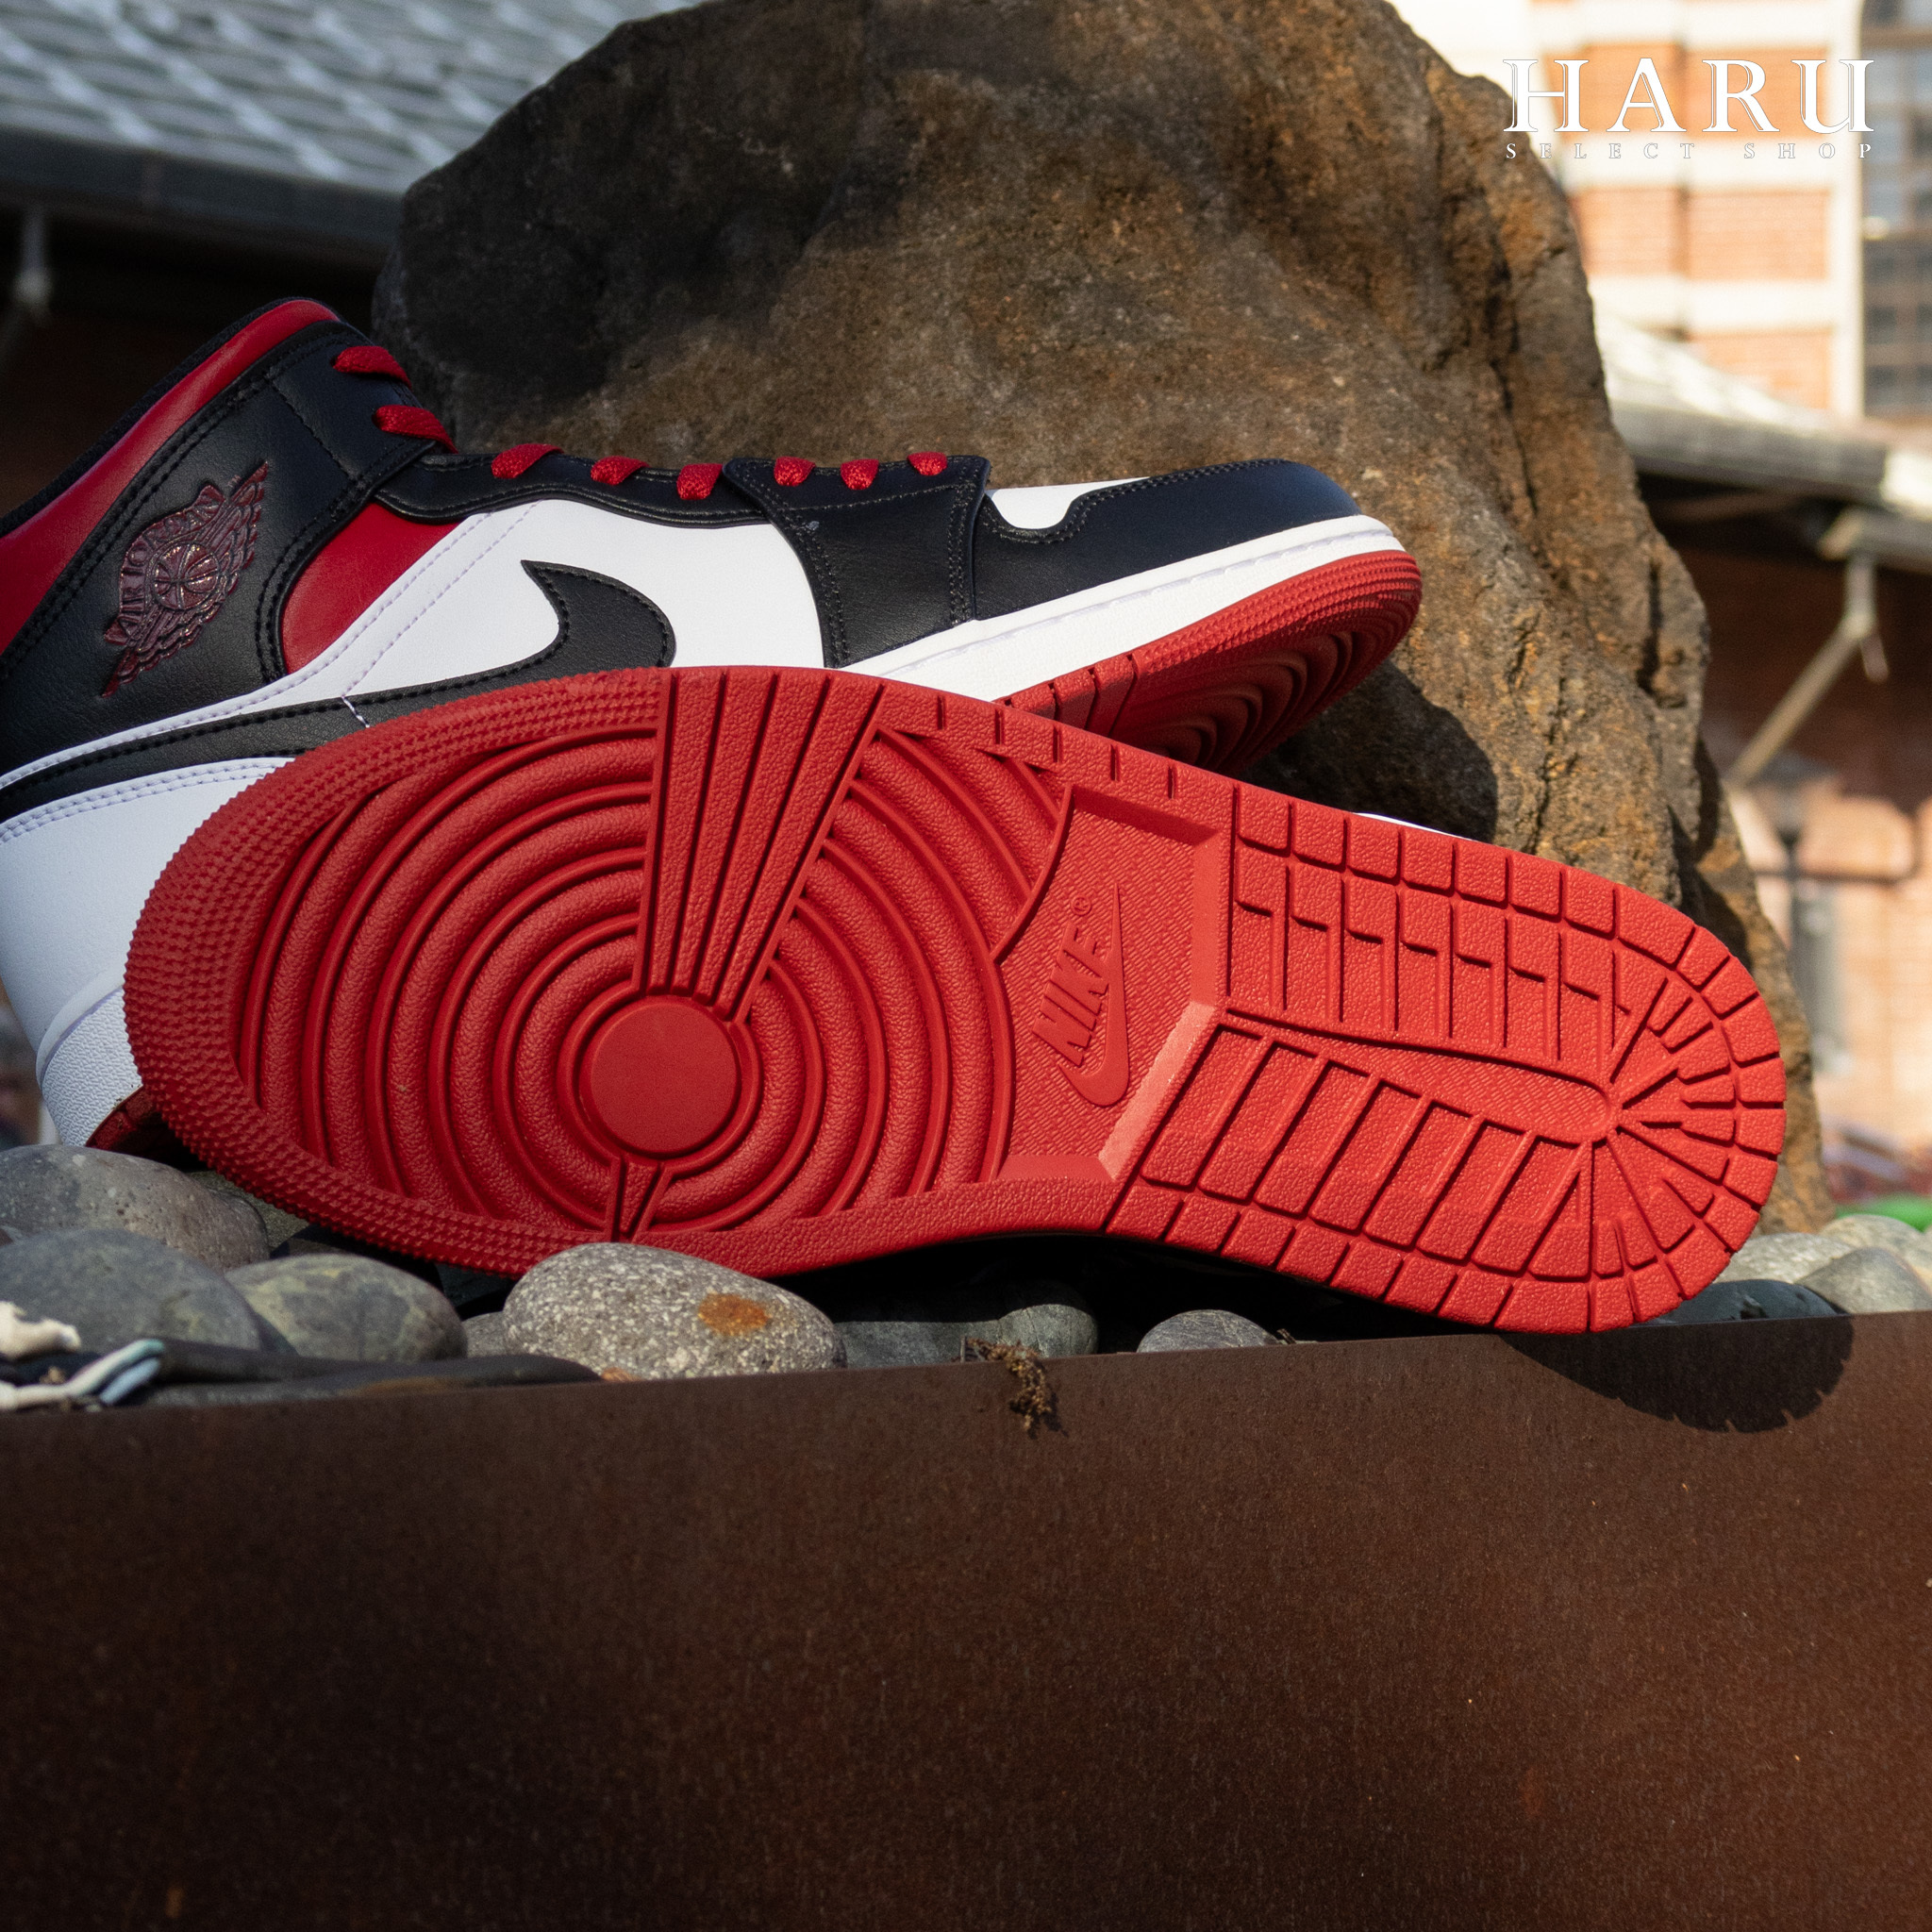 即將到貨Air Jordan 1 Mid 'Gym Red' 黑腳趾禁止轉賣平替款芝加哥黑紅